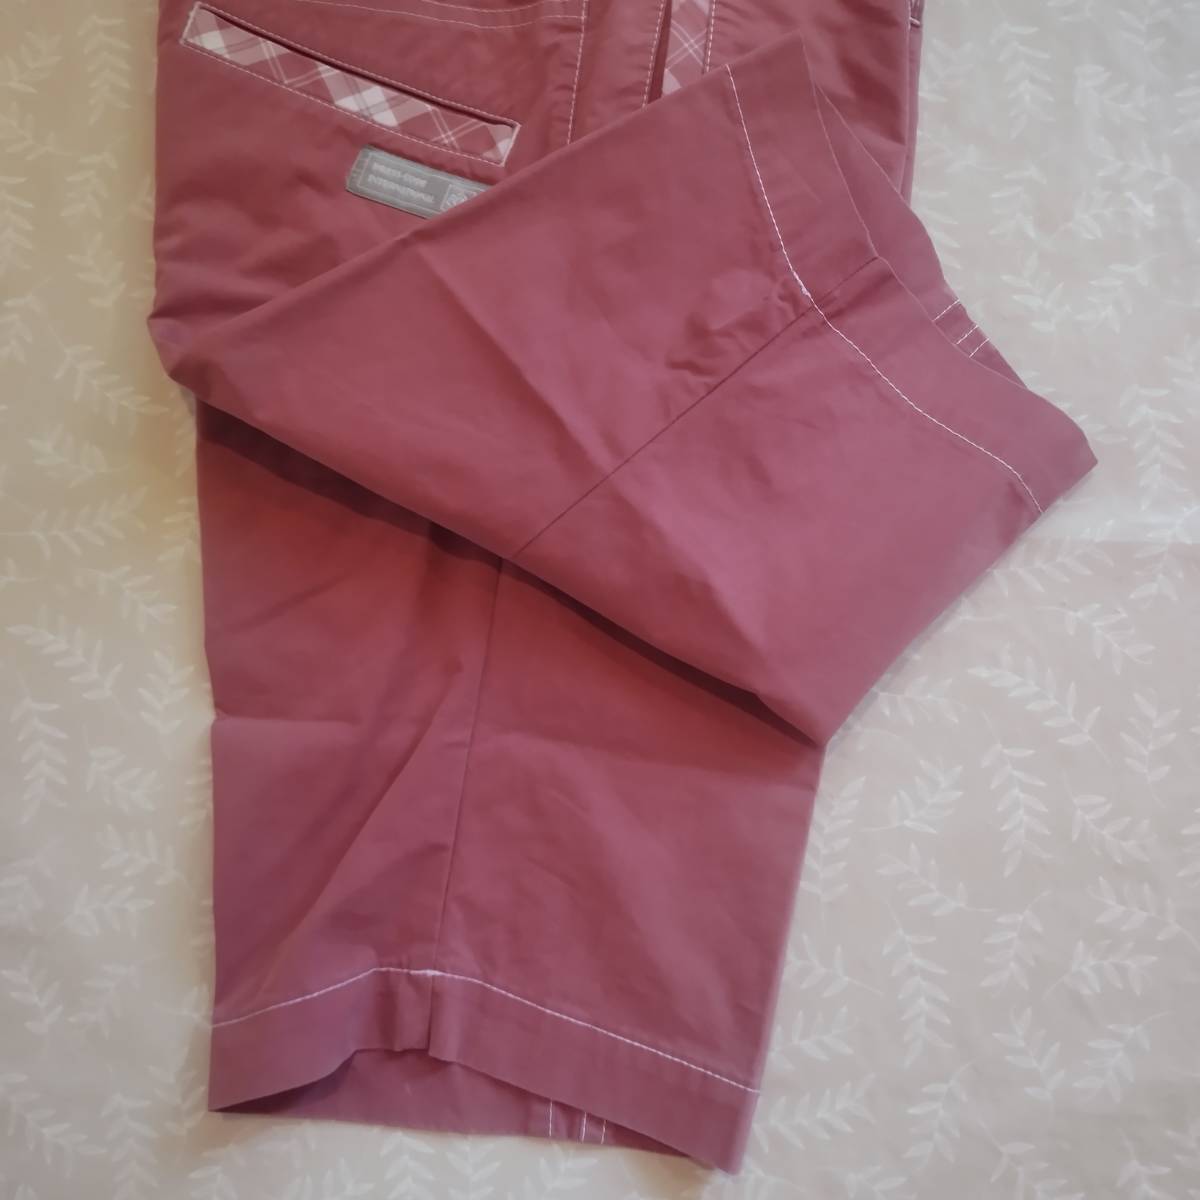  состояние хороший!zo-iZOY DRESSCODE INTERNATIONAL шорты размер 36 затонированный розовый хлопок 68% надежно сделал тонкий ткань 